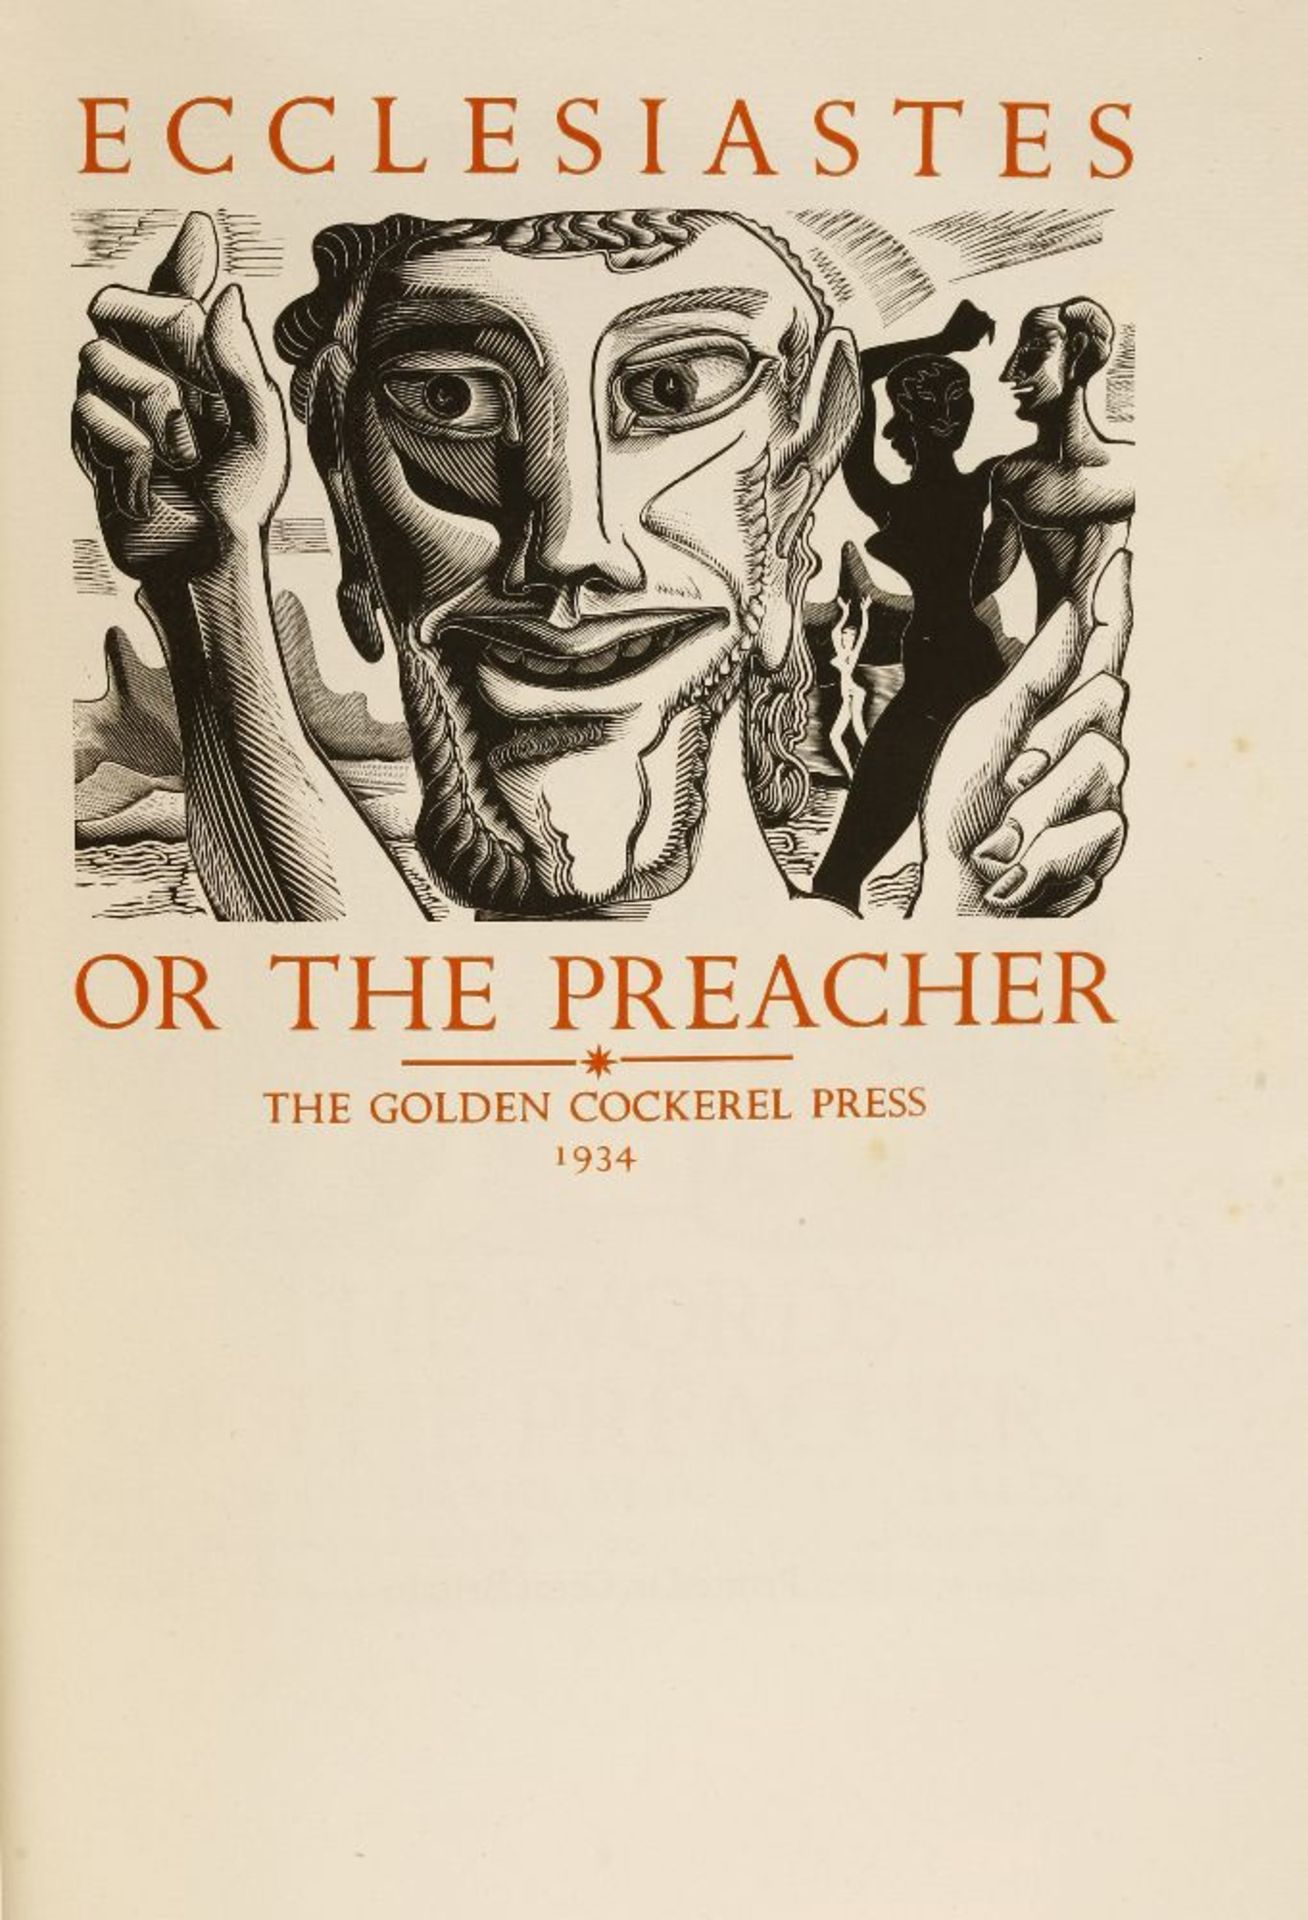 Hughes-Stanton, Blair: THE BOOK OF ECCLESIASTES OR THE PREACHER. GOLDEN COCKEREL PRESS, 1934, The - Image 2 of 2